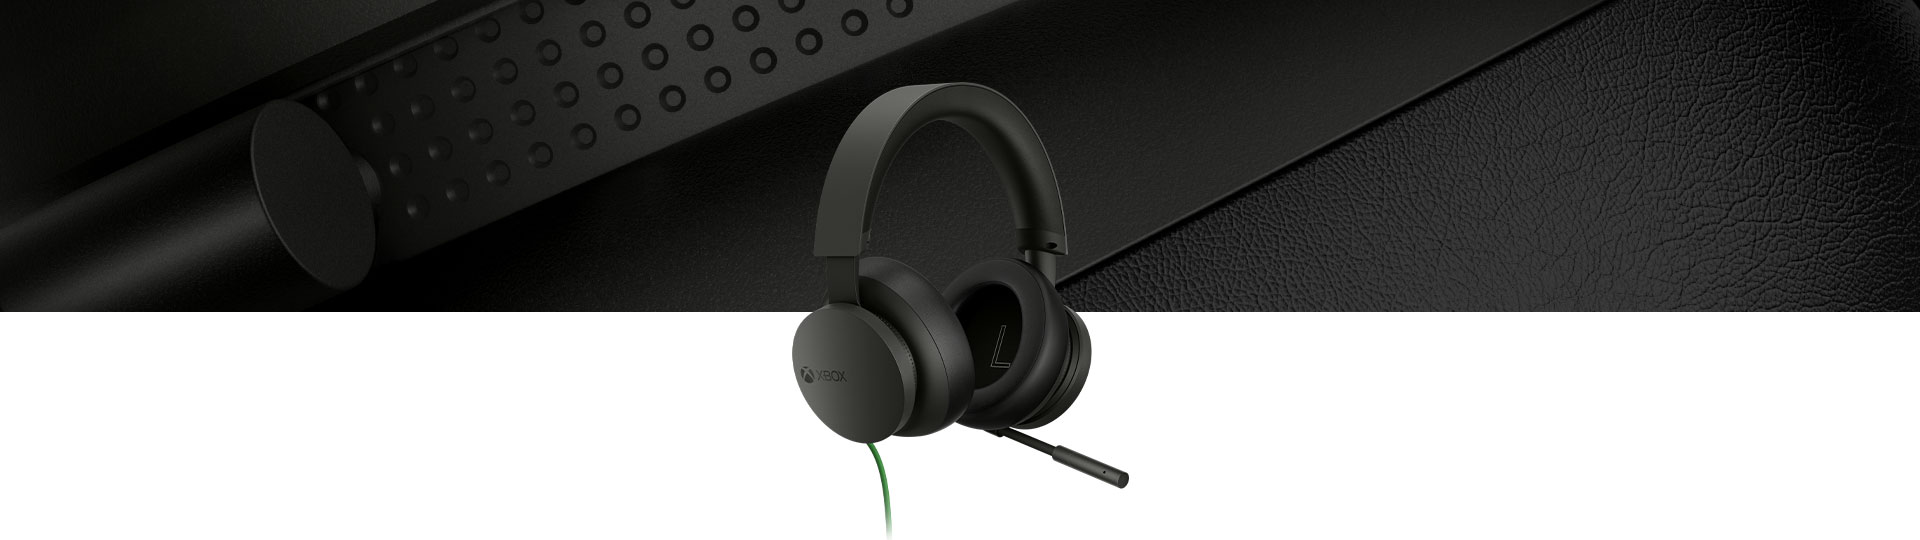 Stereoslúchadlá ku konzole Xbox s detailným záberom slúchadiel v pozadí